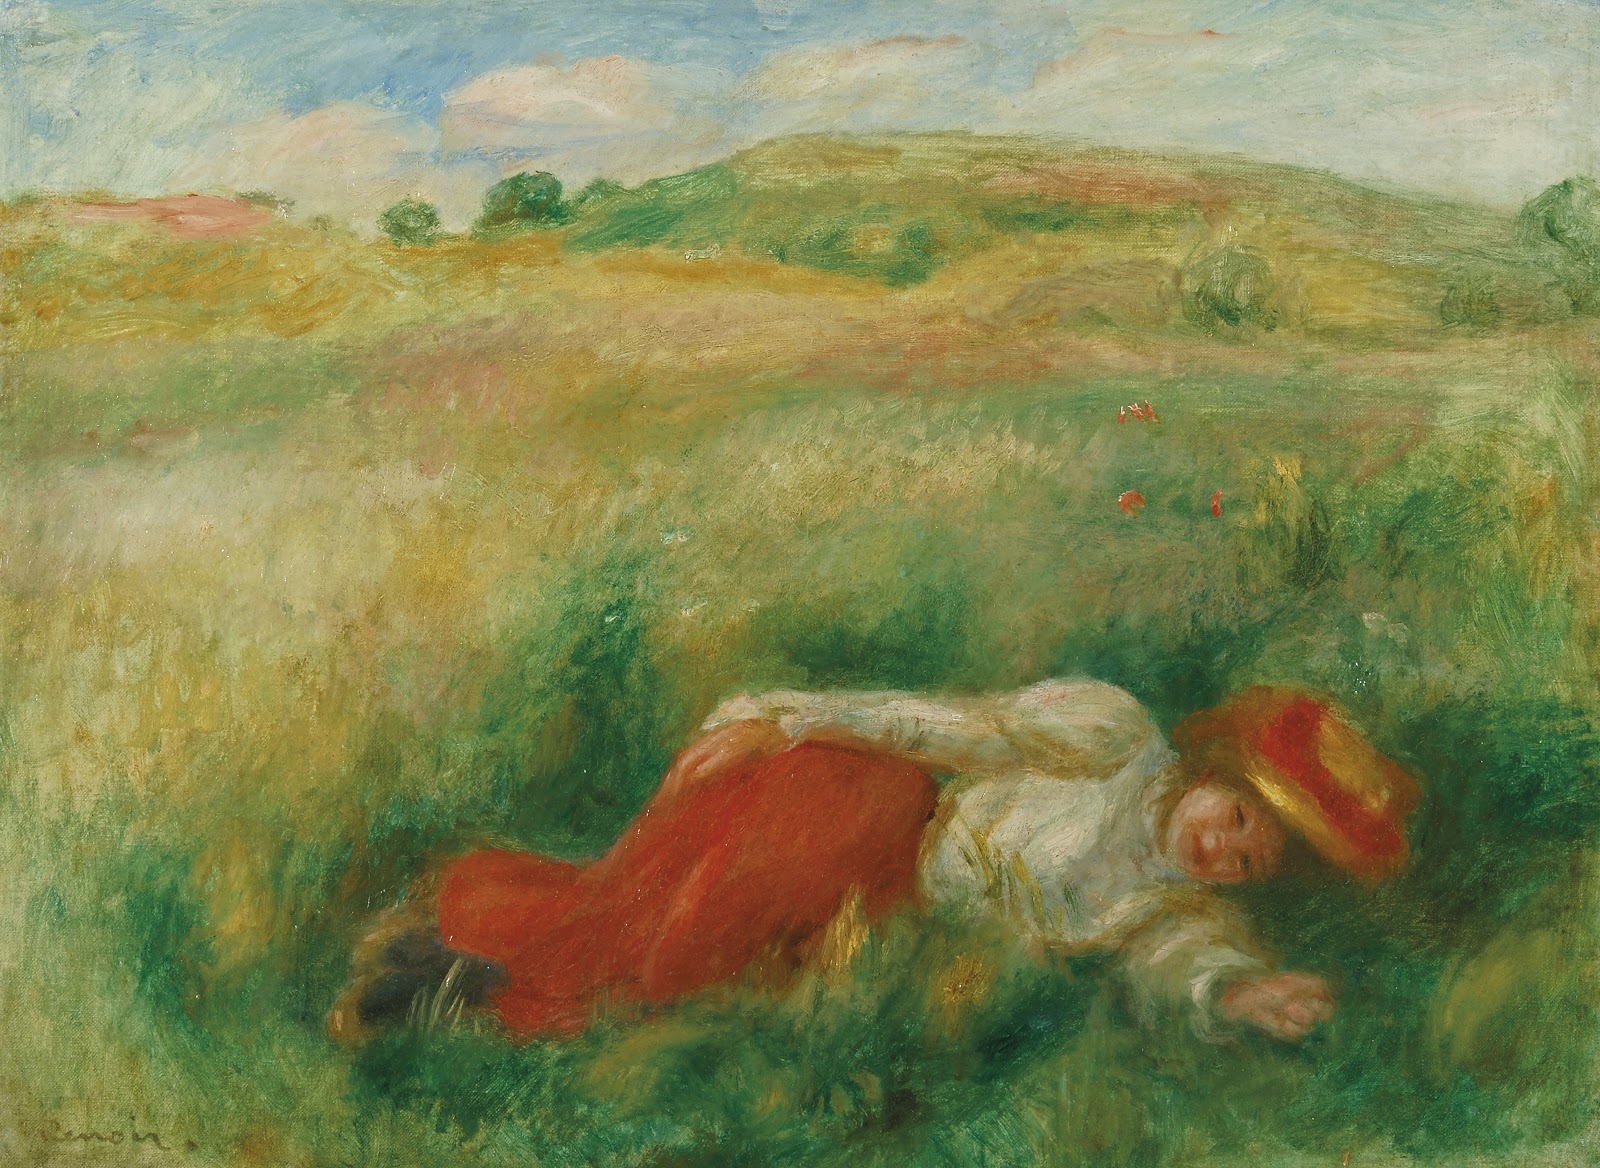 Pierre+Auguste+Renoir-1841-1-19 (486).jpg